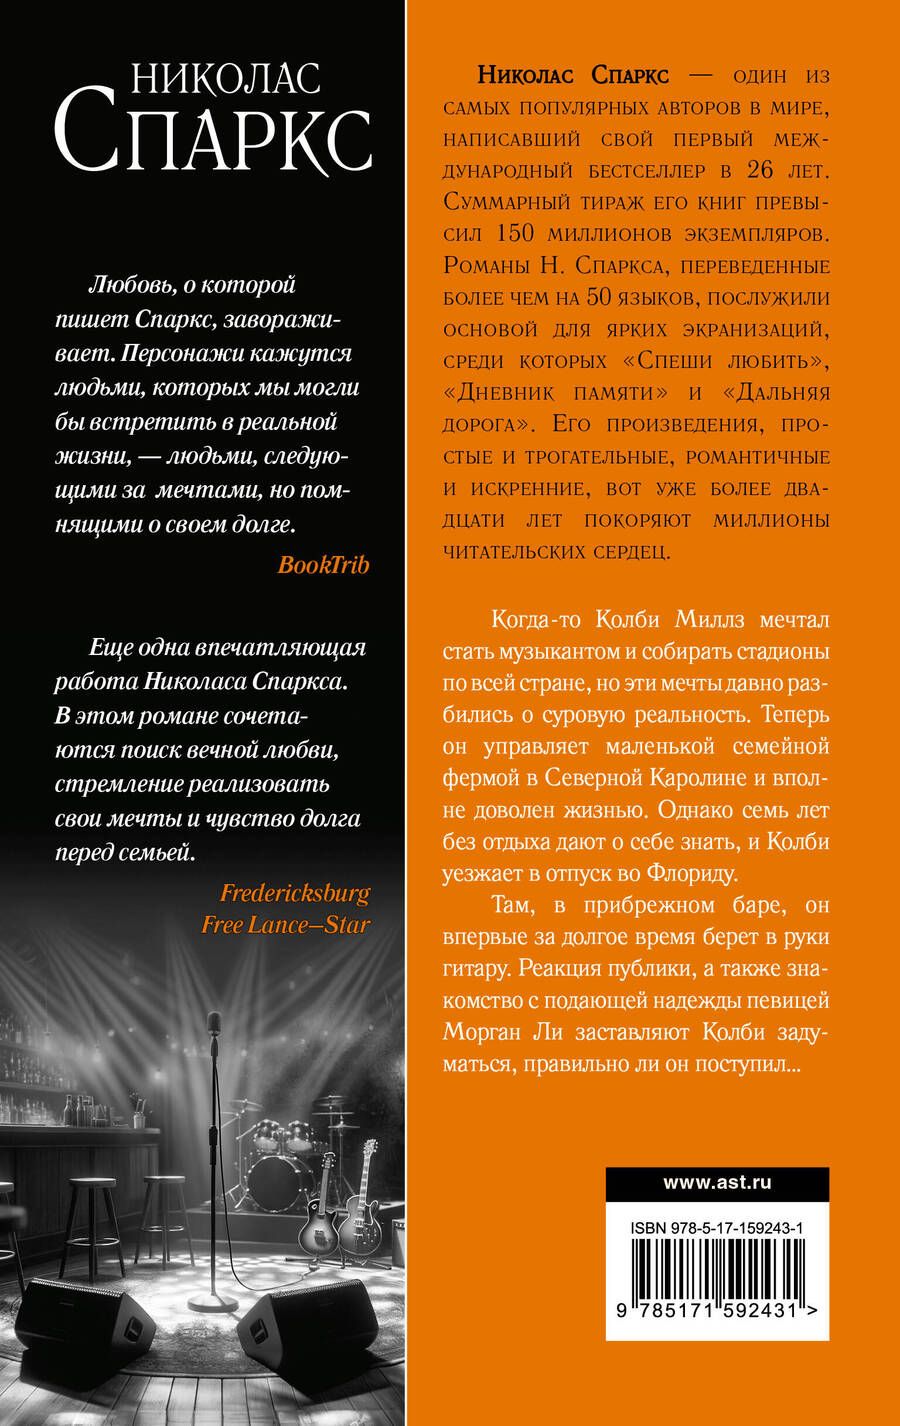 Обложка книги "Николас Спаркс: Страна грез"